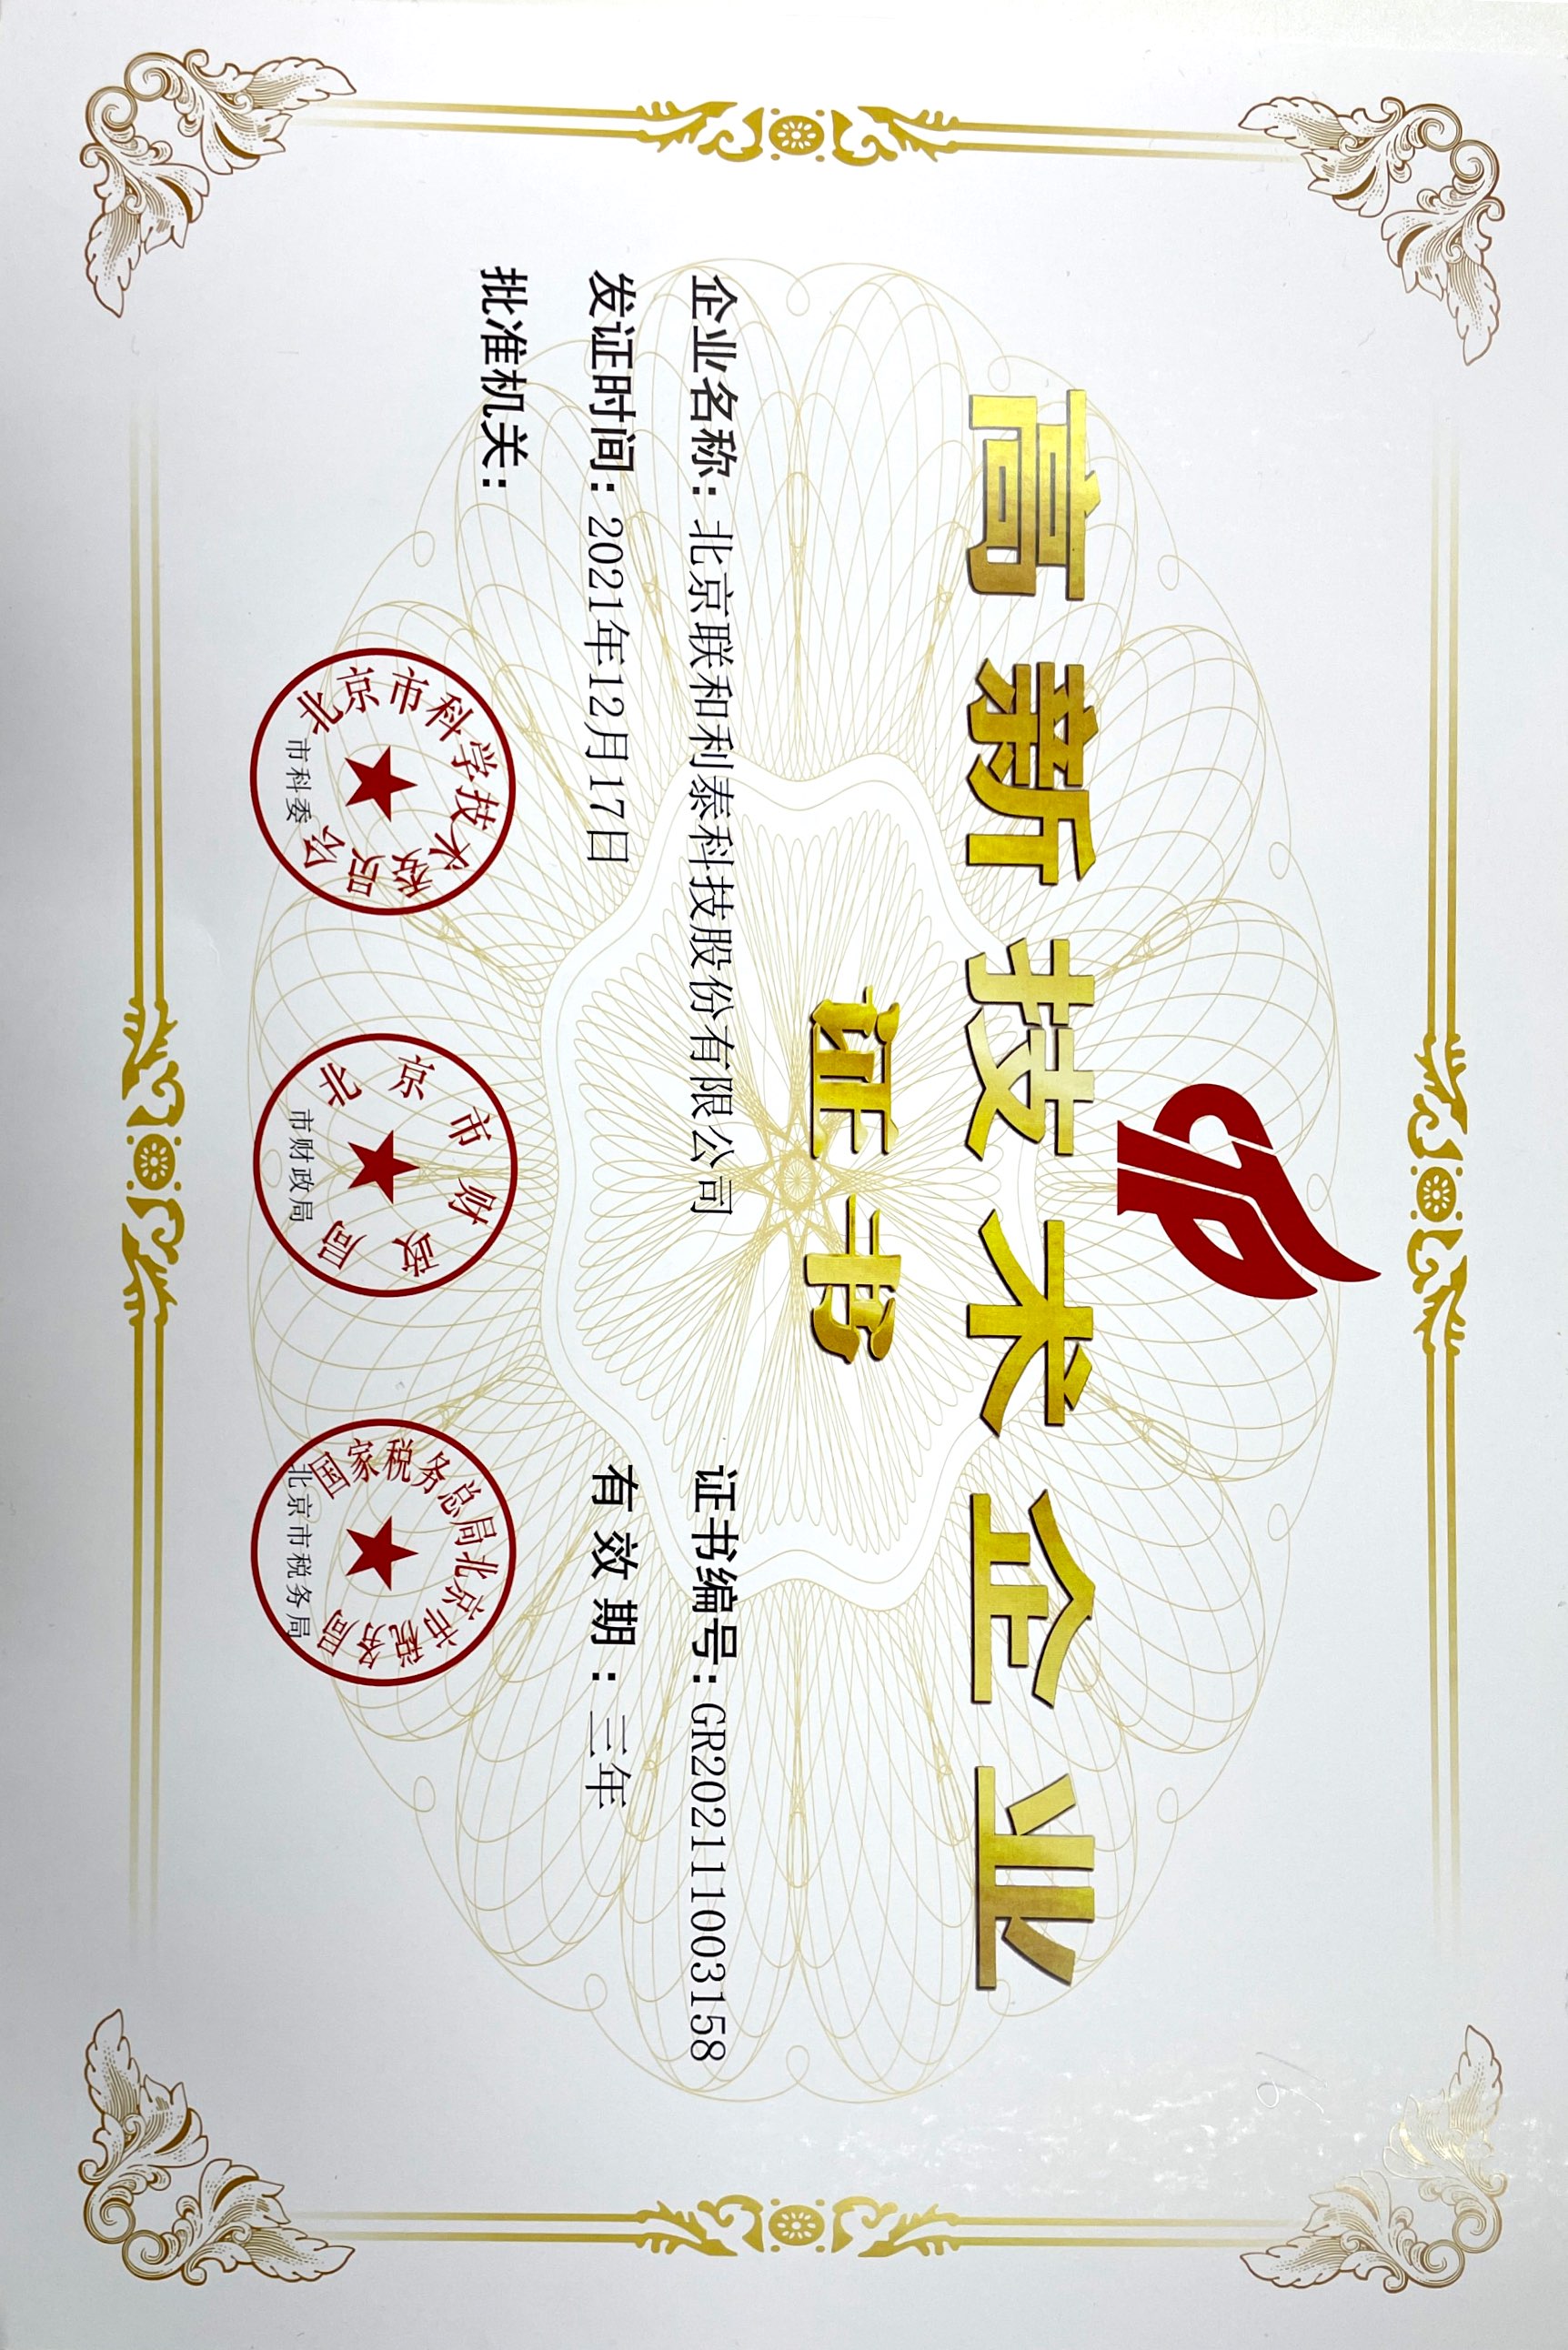 08.高新技术企业证书.jpg